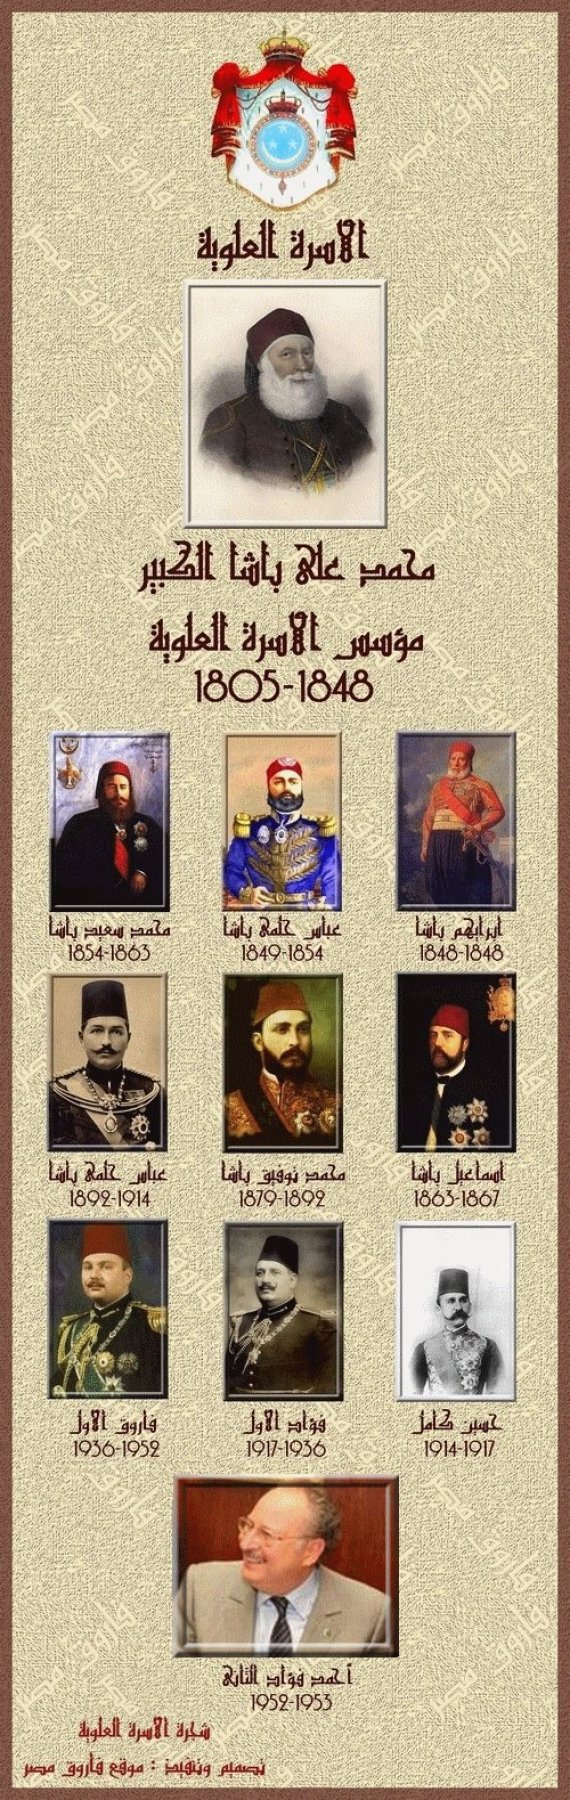 أطول 10 سلالات حاكمة في تاريخ العرب والمسلمين O-FAMILY-570